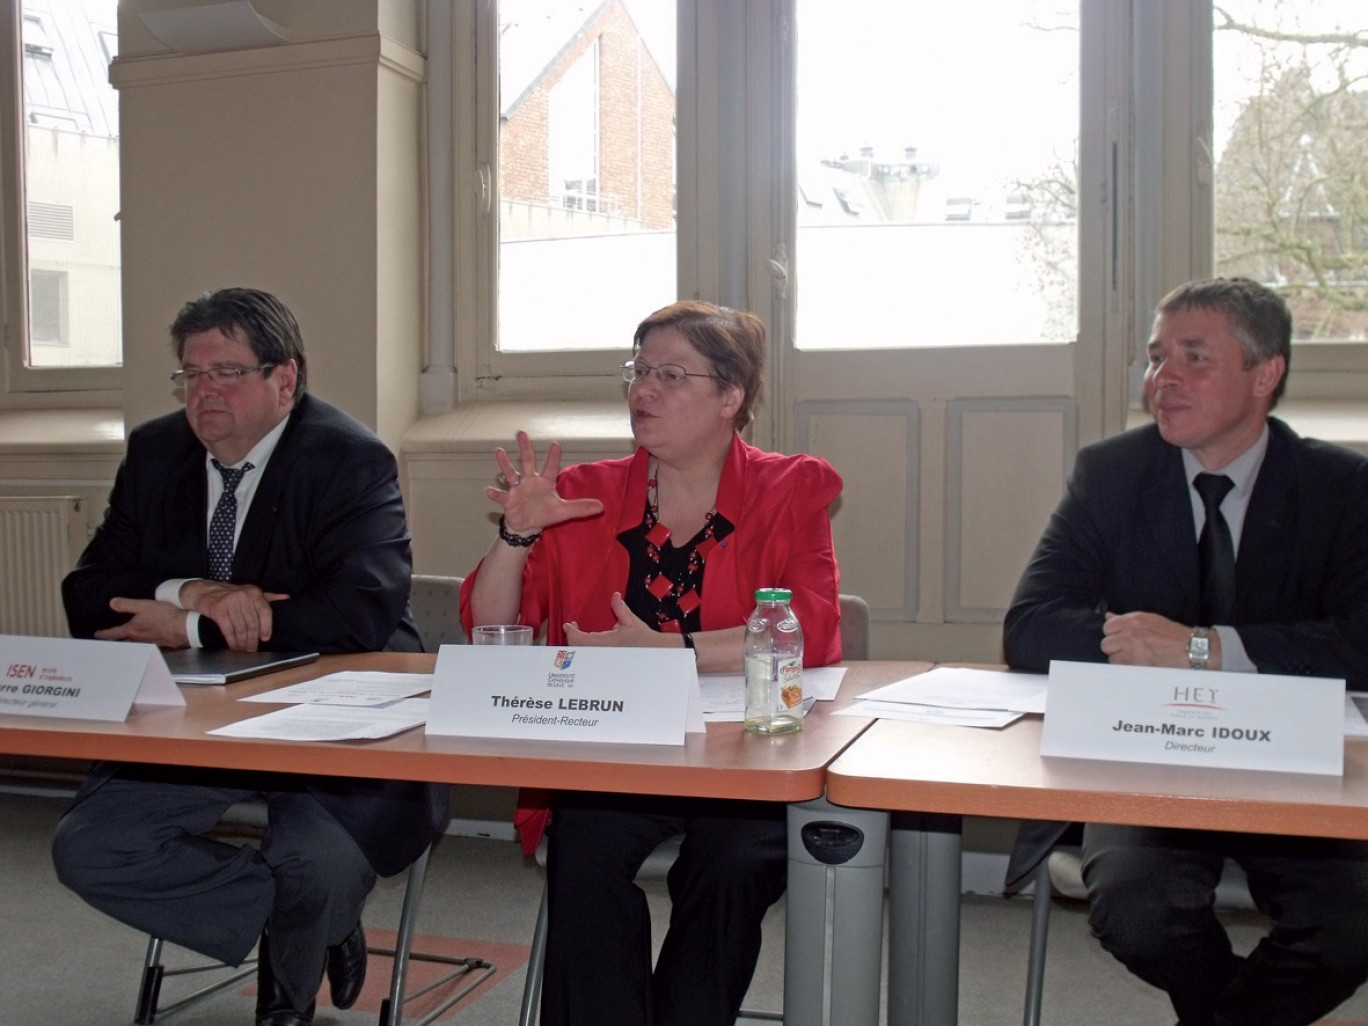 De gauche à droite, Pierre Giorgini, directeur général de l’ISEN, Thérèse Lebrun, président-recteur de l’Université catholique, et Jean-Marc Idoux, directeur général HEI.